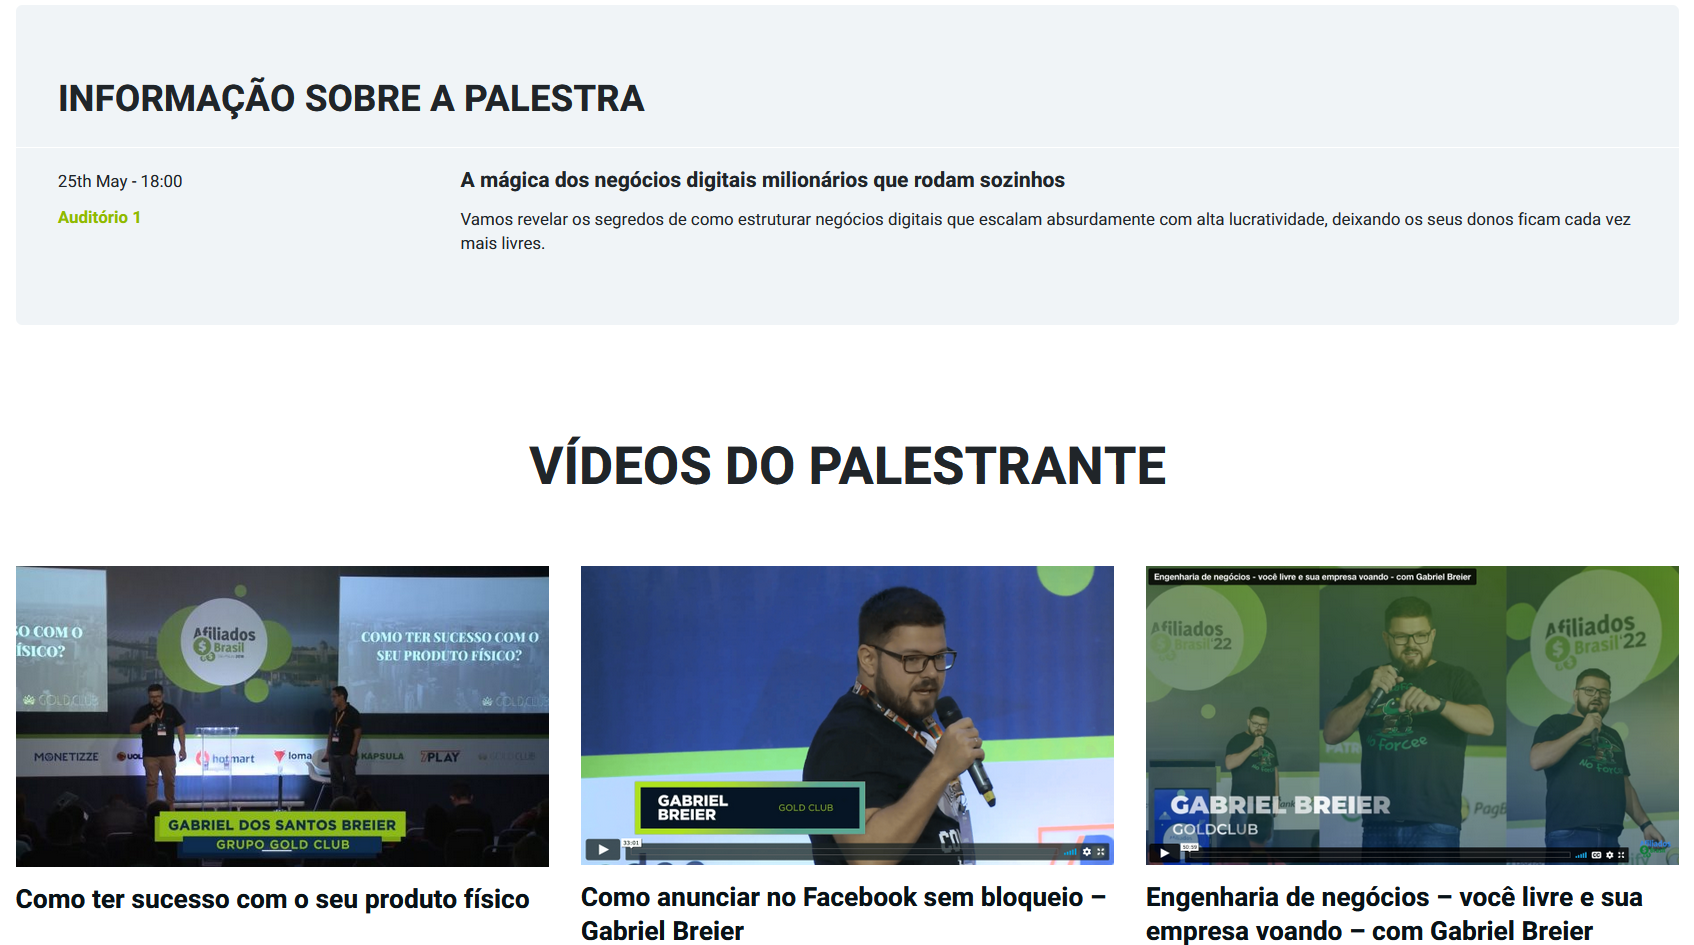 Site do evento Afiliados Brasil mostra que Gabriel Breier foi um dos palestrantes e teria ensinado como anunciar no Facebook sem bloqueios